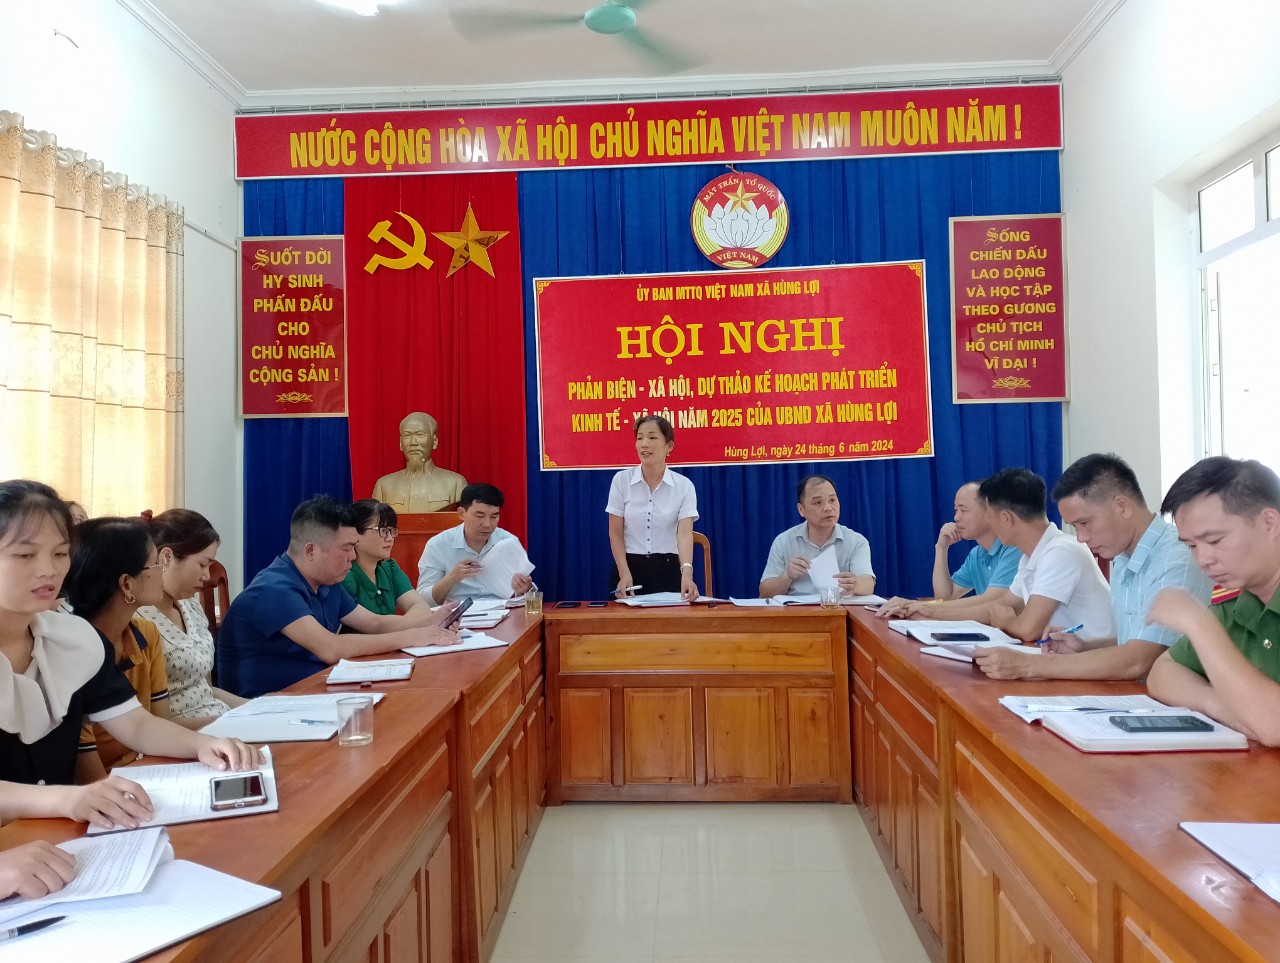 Yên Sơn: Uỷ ban MTTQ xã Hùng Lợi tổ chức hội nghị phản biện - xã hội đối với dự thảo kế hoạch phát triển kinh tế - xã hội năm 2025